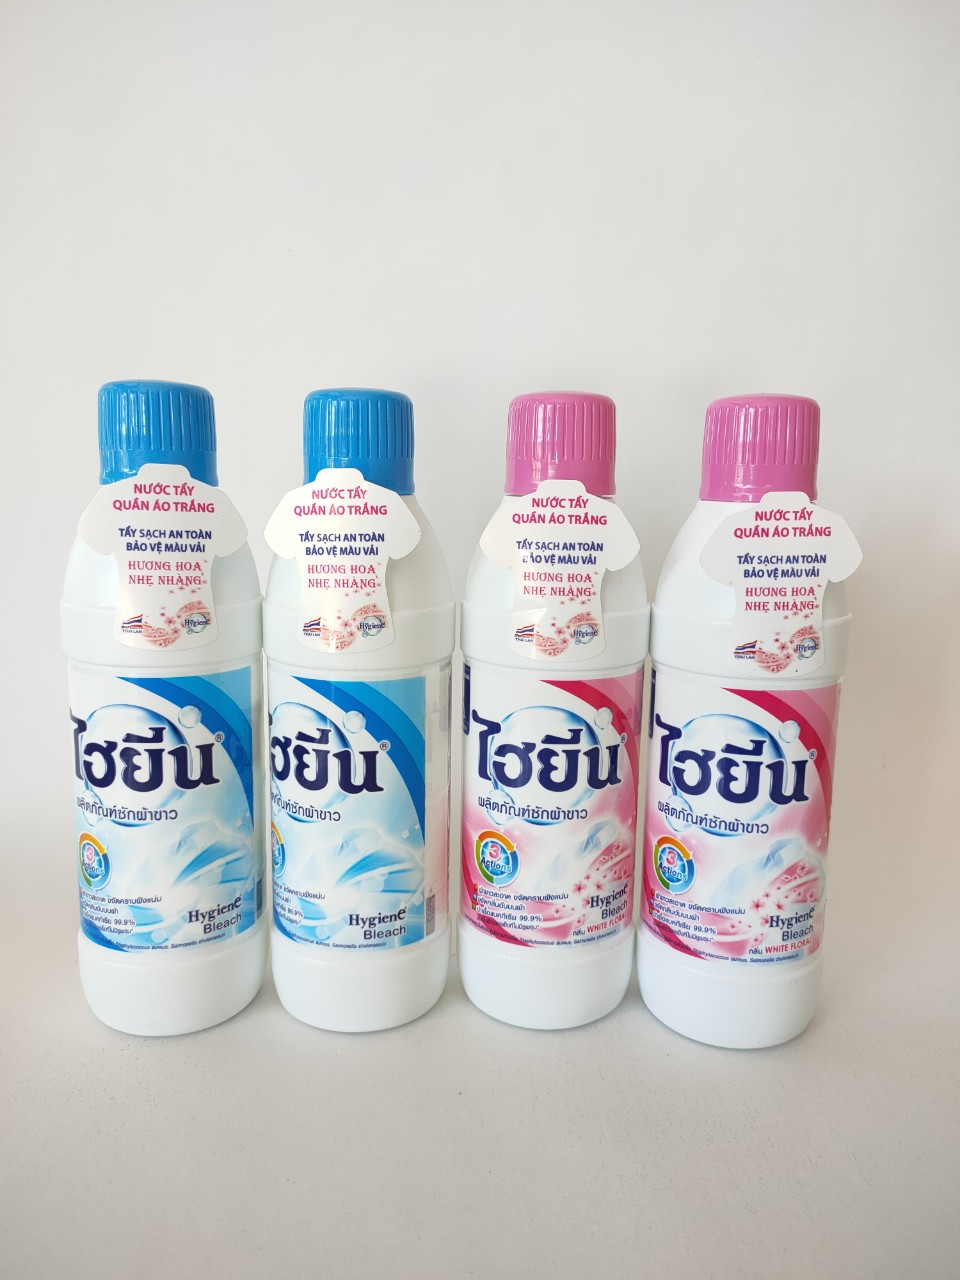 Nước Tẩy Quần Áo Trắng Hygiene 250ml - Thái Lan